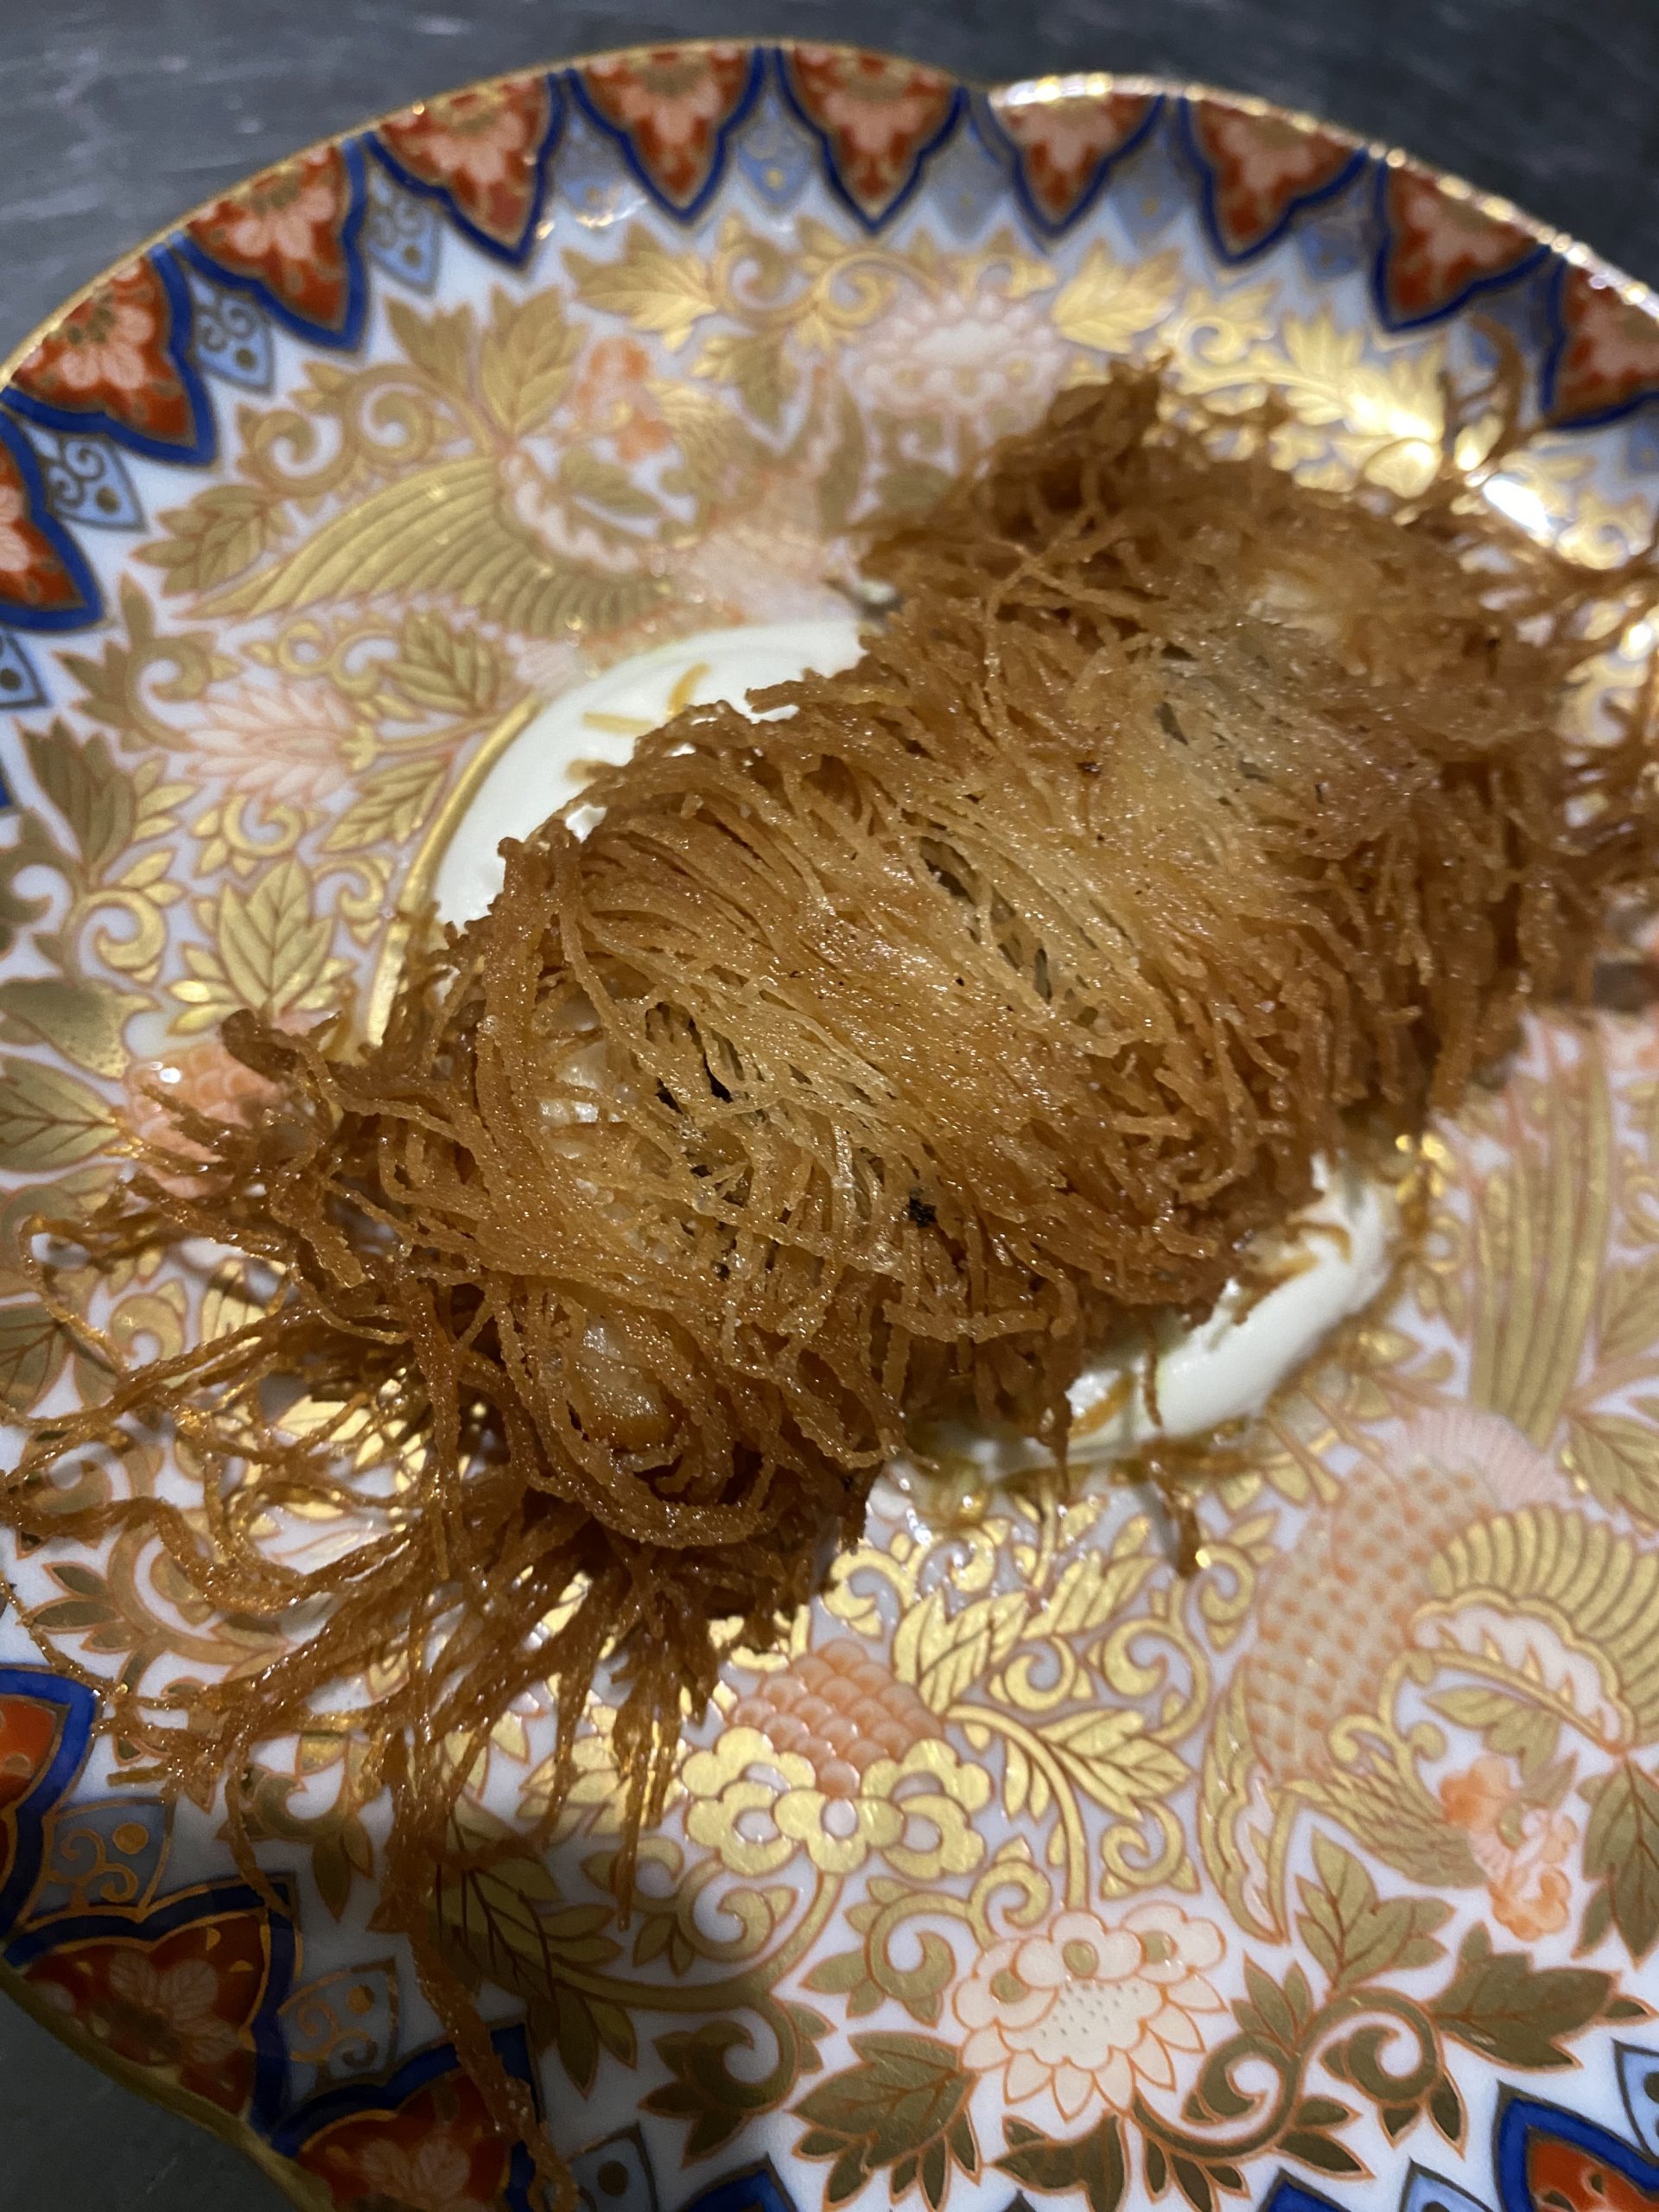 タイのカダイフ焼き ライムのソース添え 海の恵み 食の底力 Japan 公式レシピサイト